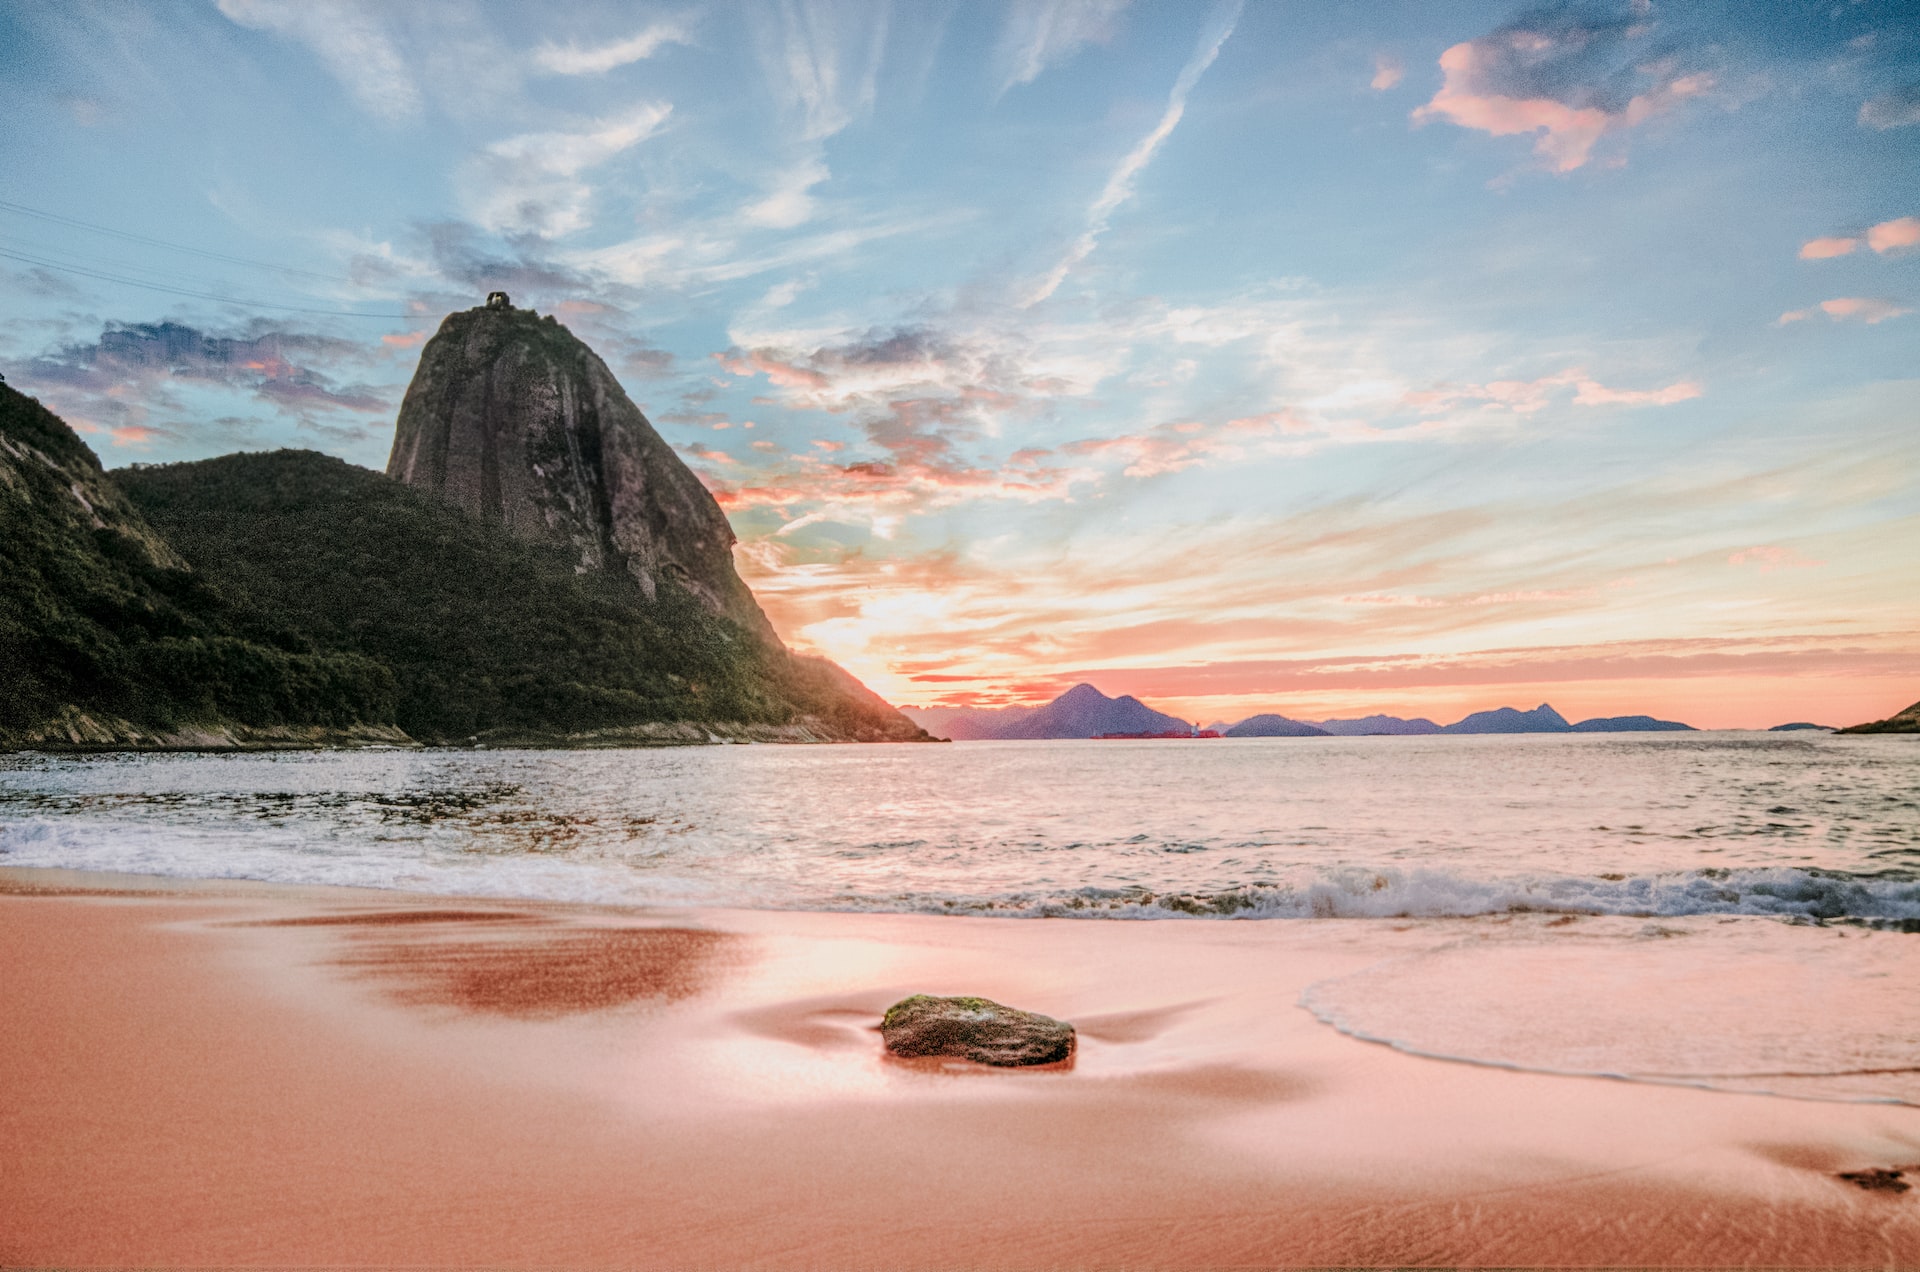 A beautiful beach in Rio, Brazil.